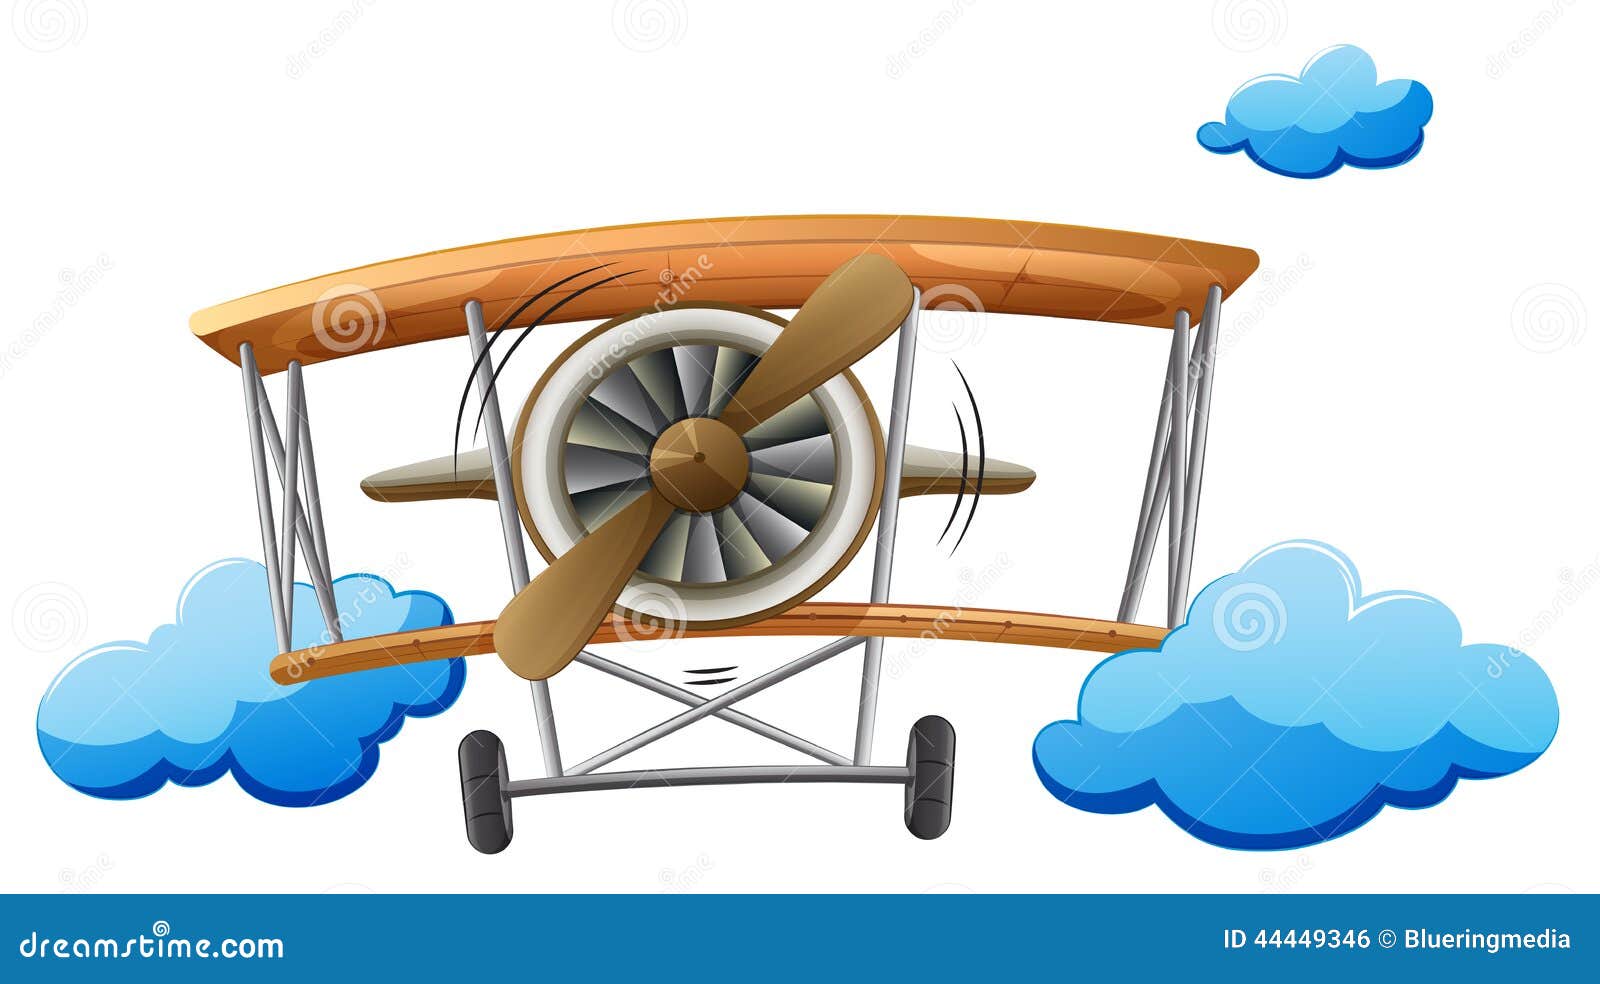 Рисунок самолетик с винтом